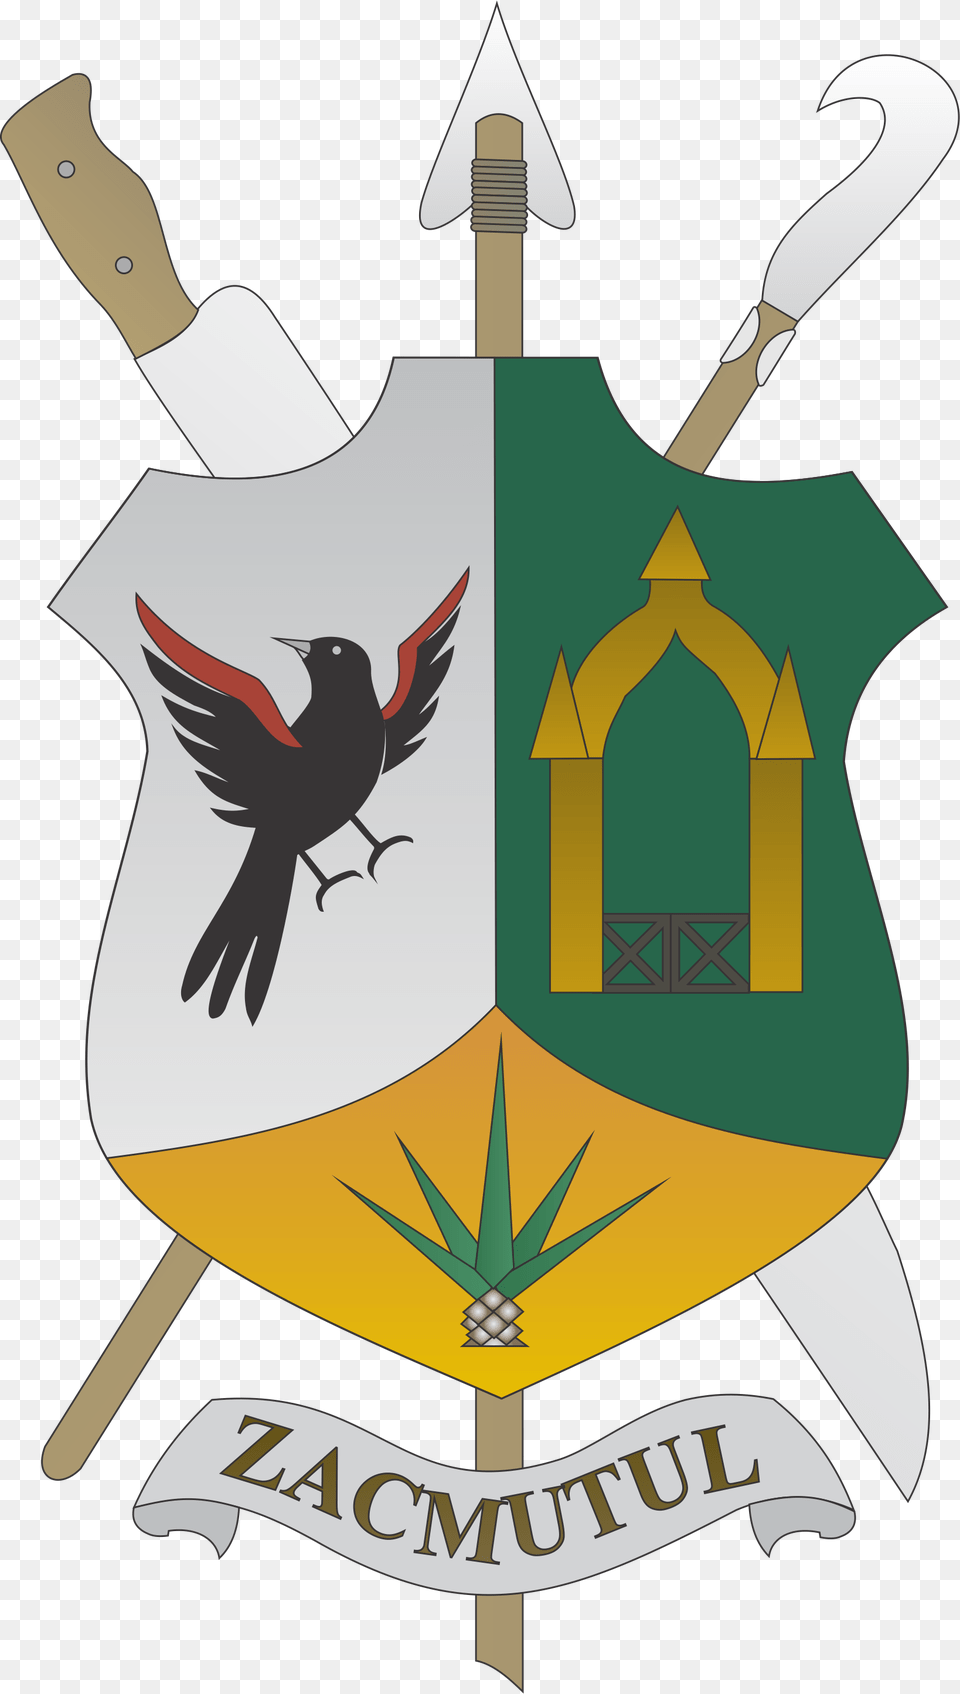 Escudo De Armas Oficial Escudo De Motul Yucatan, Armor, Animal, Bird, Shield Free Transparent Png